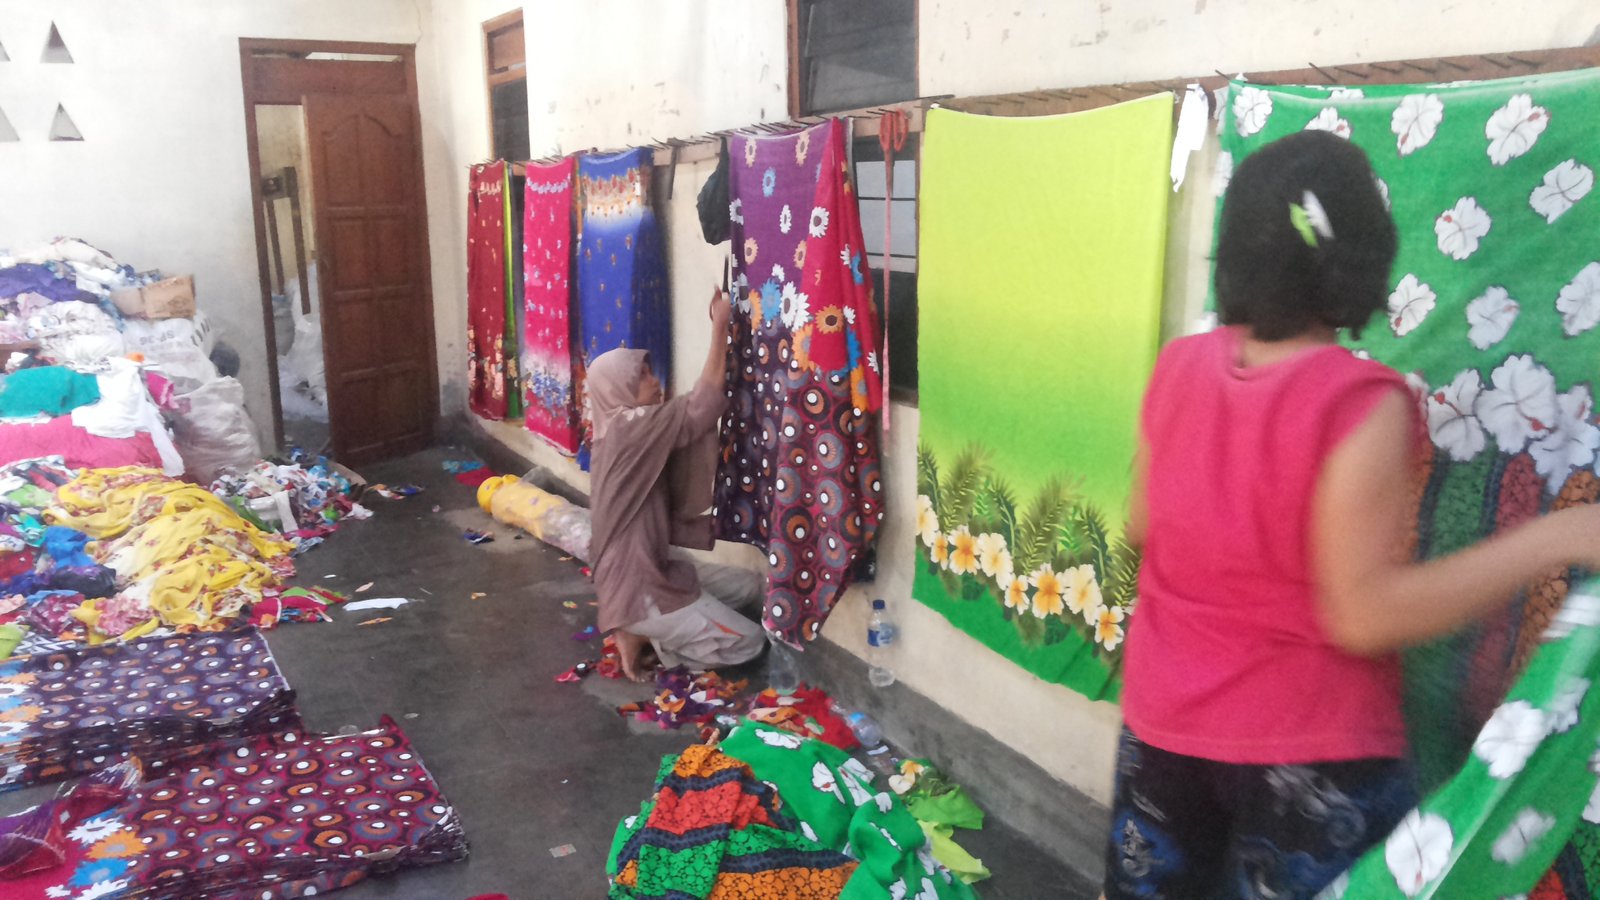 Harga Grosir Daster Jumbo Panjang Murah Meriah Berkualitas Pabrik Batik Terbaik di Tanah Abang Solo Pekalongan Surabaya